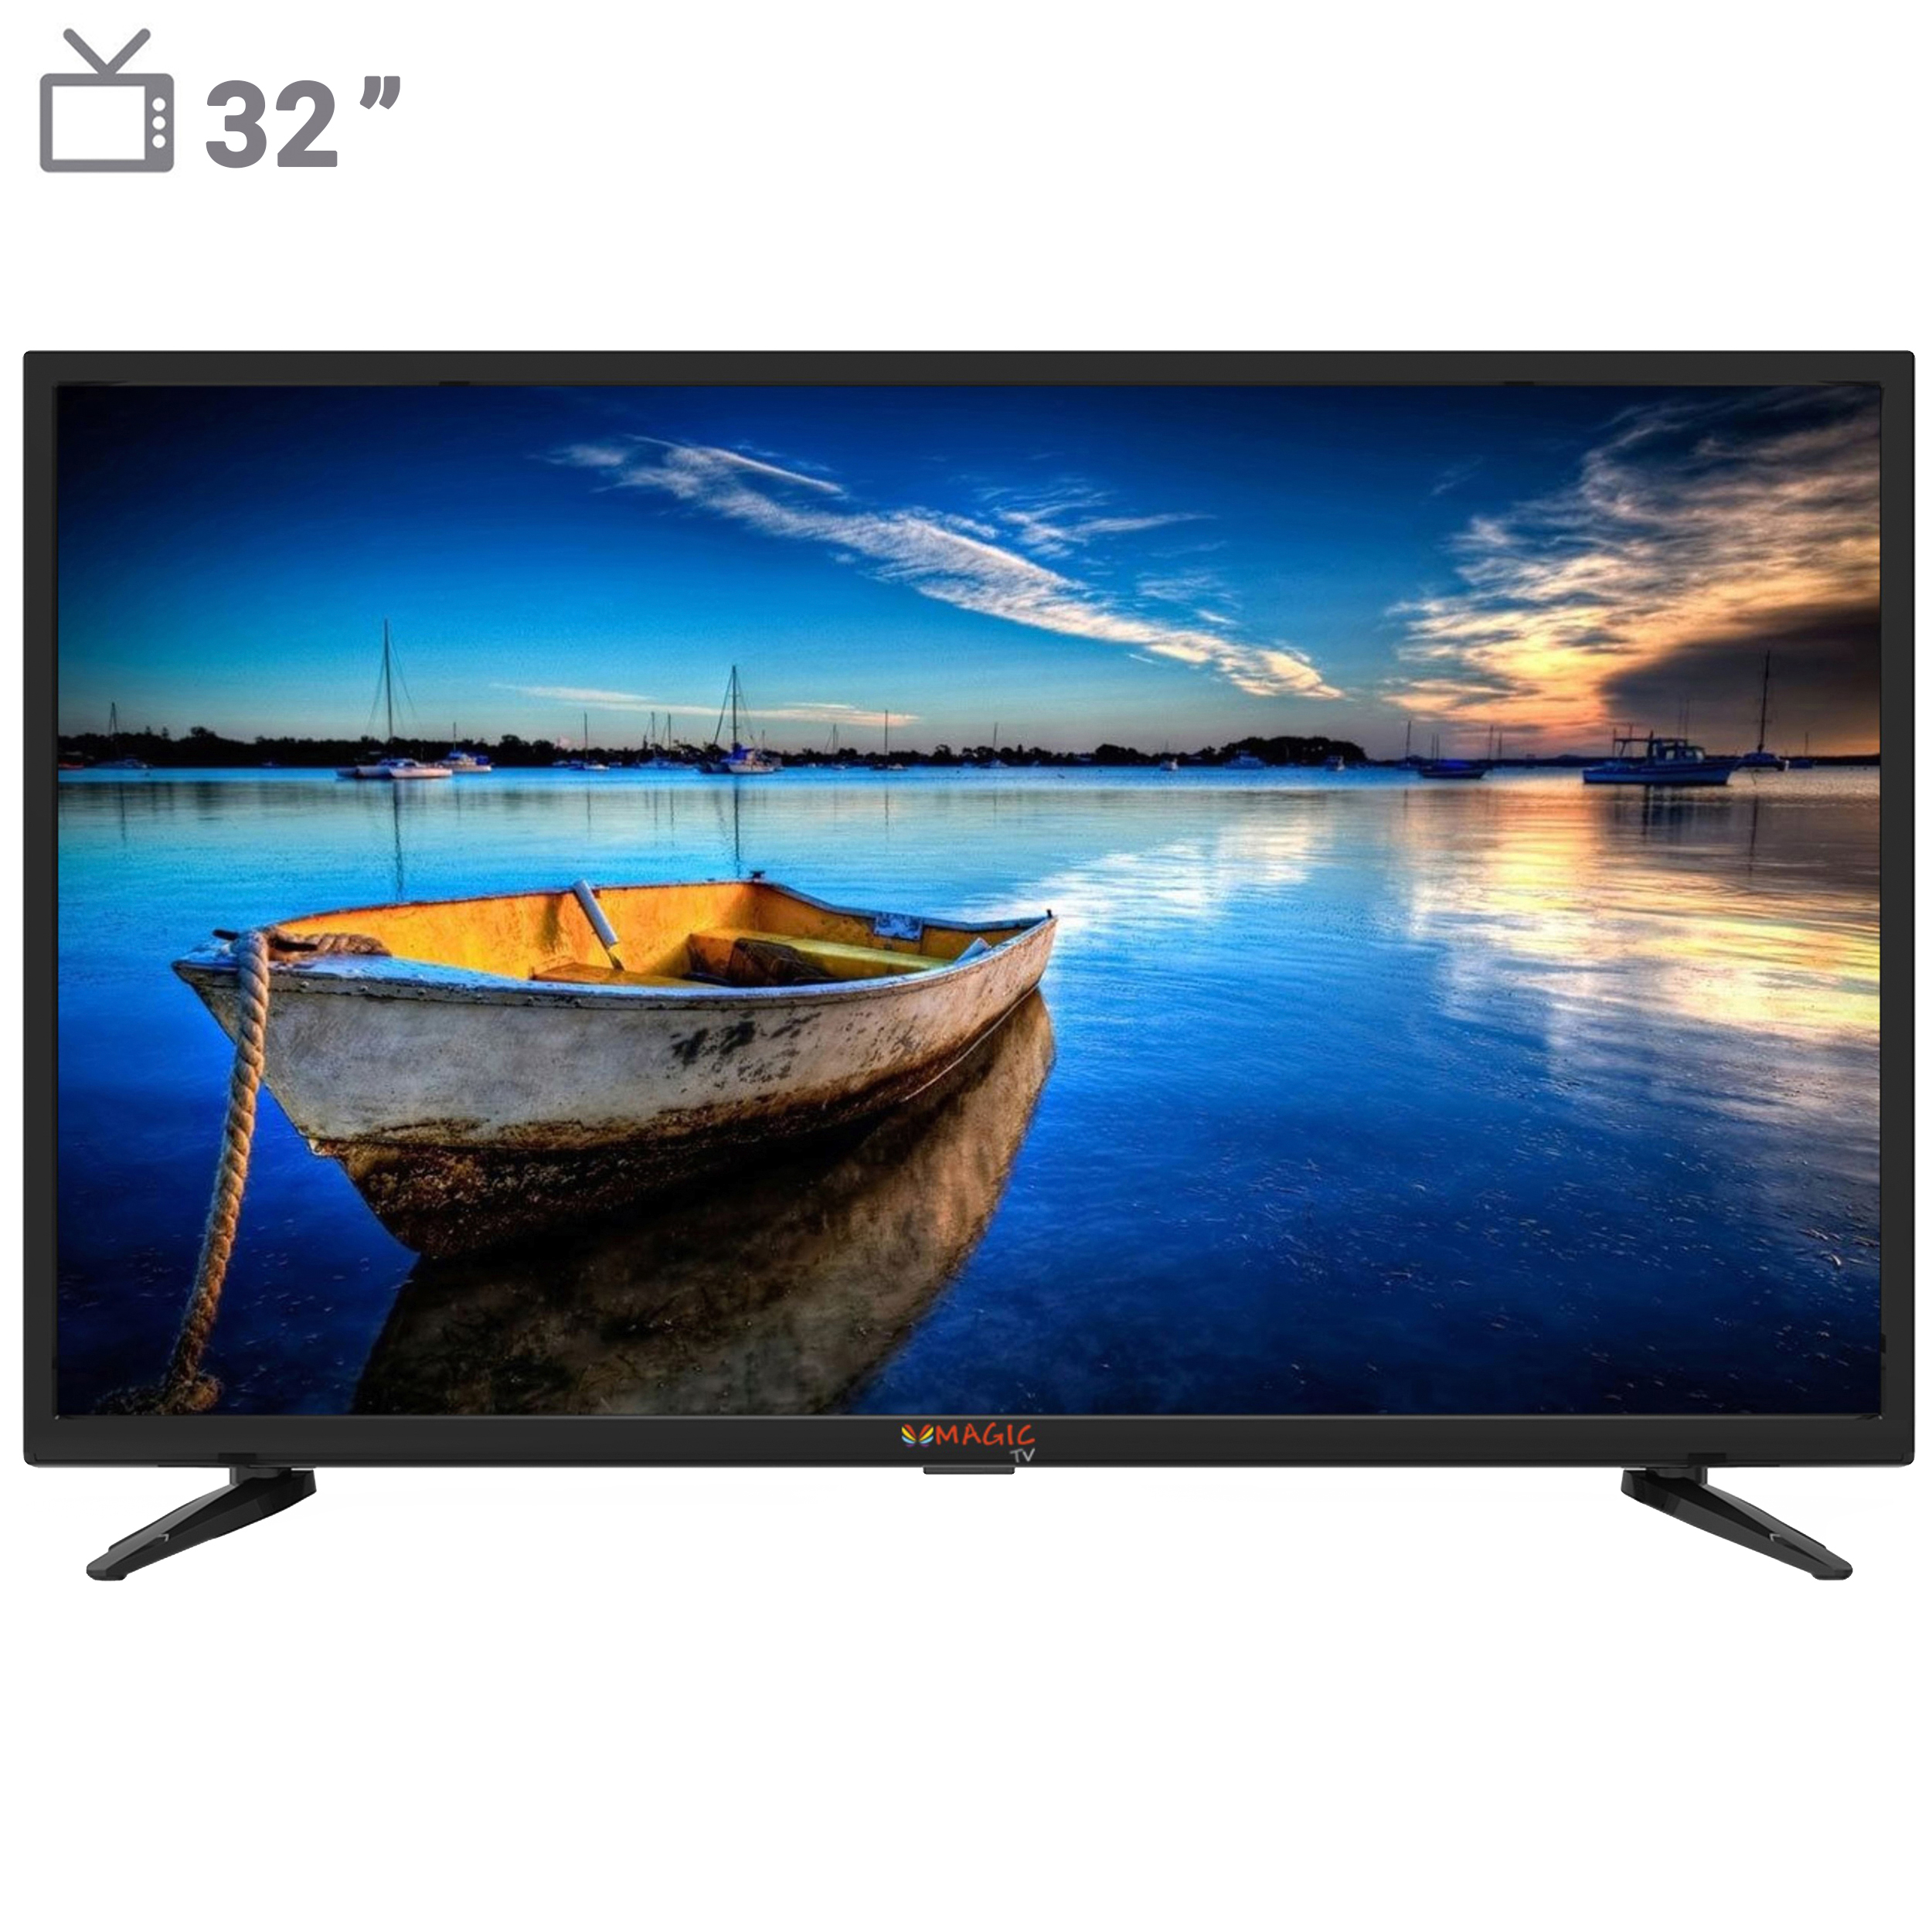 نکته خرید - قیمت روز تلویزیون ال ای دی مجیک تی وی مدل MT32D1300 سایز 32 اینچ خرید